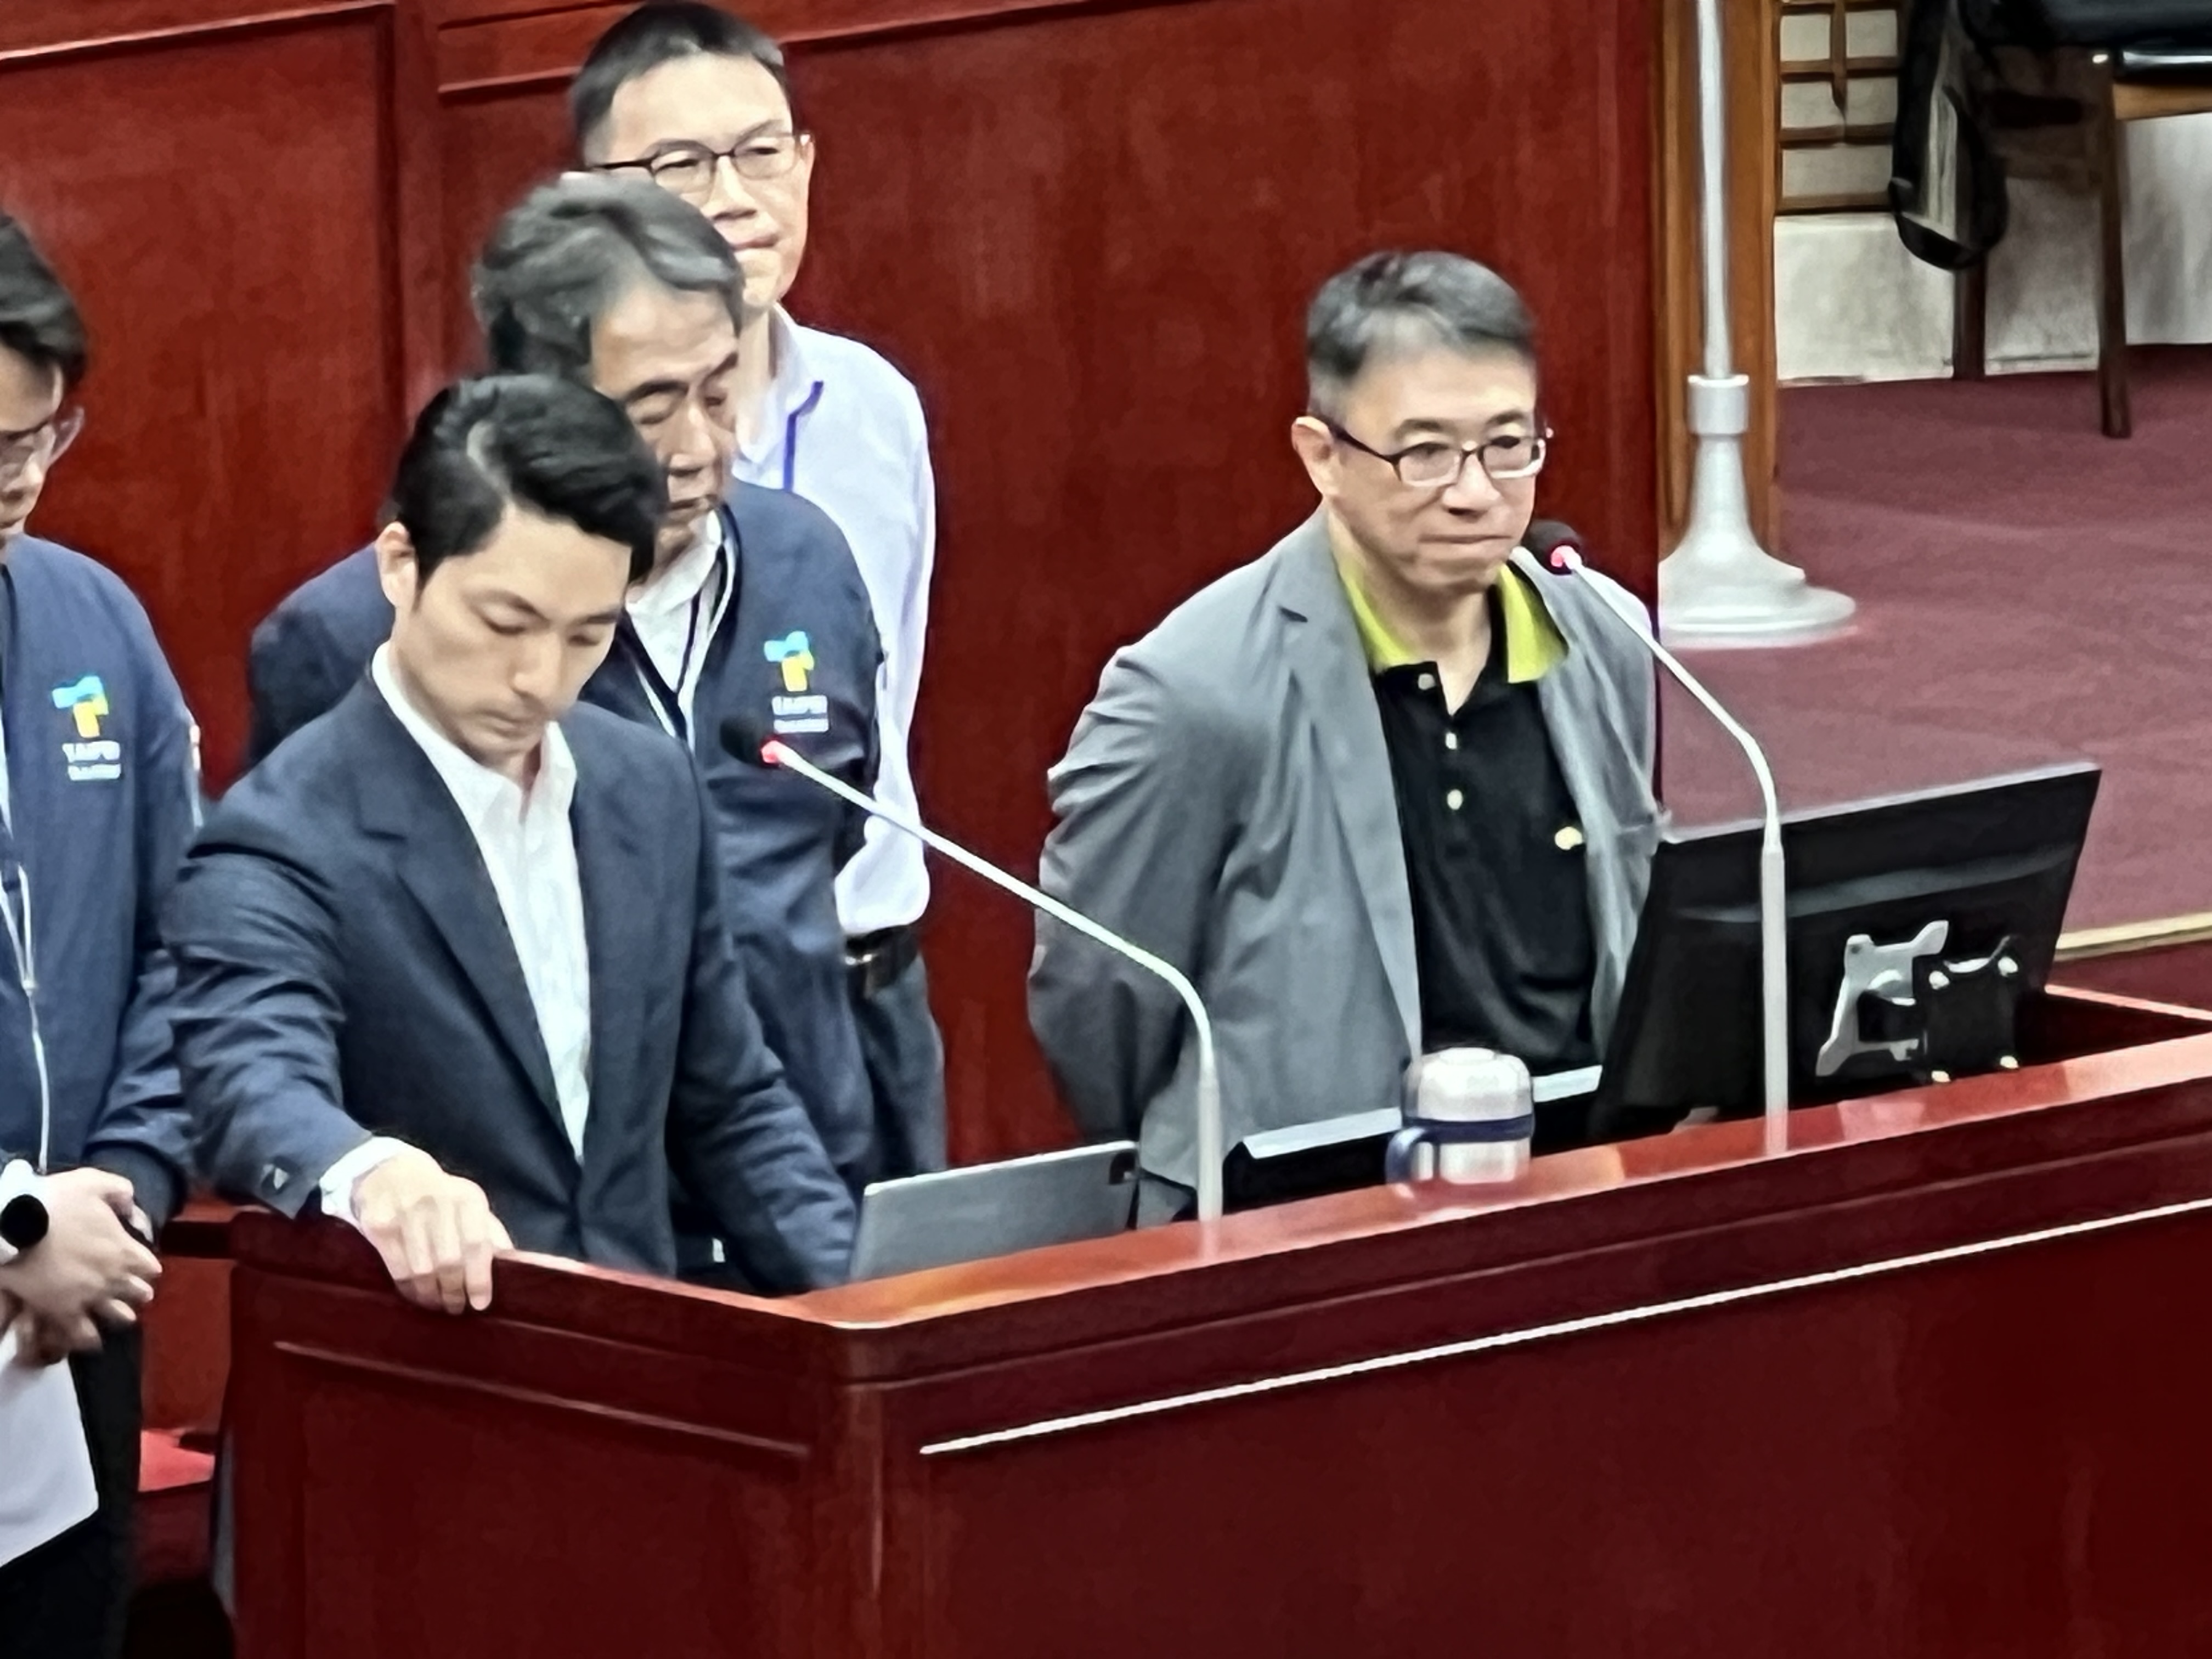 台北市政府前秘书长、现为参事的陈志铭（右）出席台北市议会进行答询。记者钟维轩／摄影